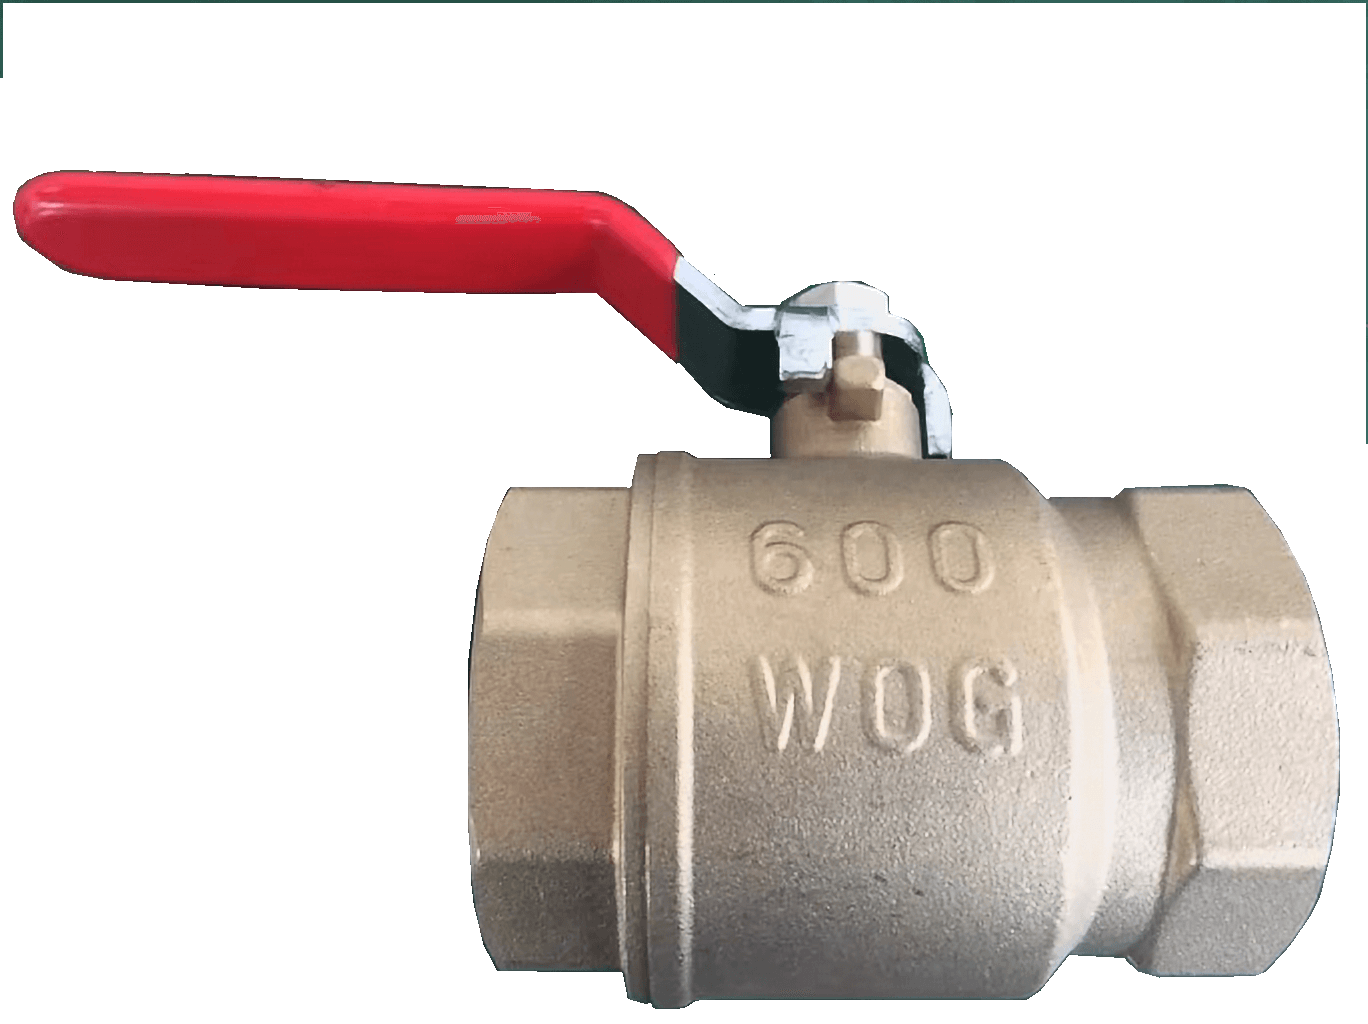 brass ball valve 600WOG